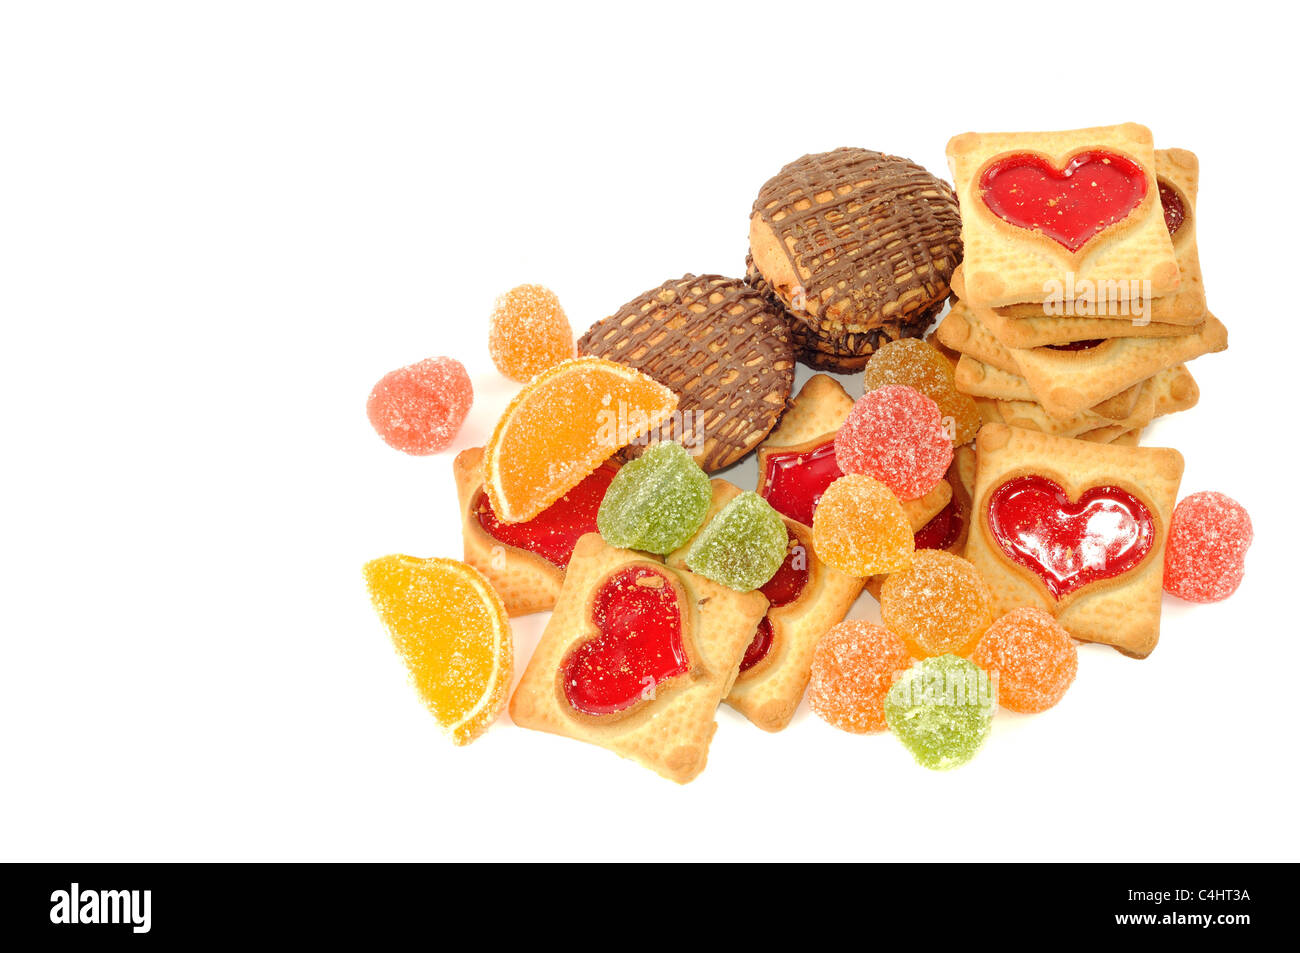 Cookies und Geleesüßigkeit, auf einem weißen Hintergrund Stockfoto